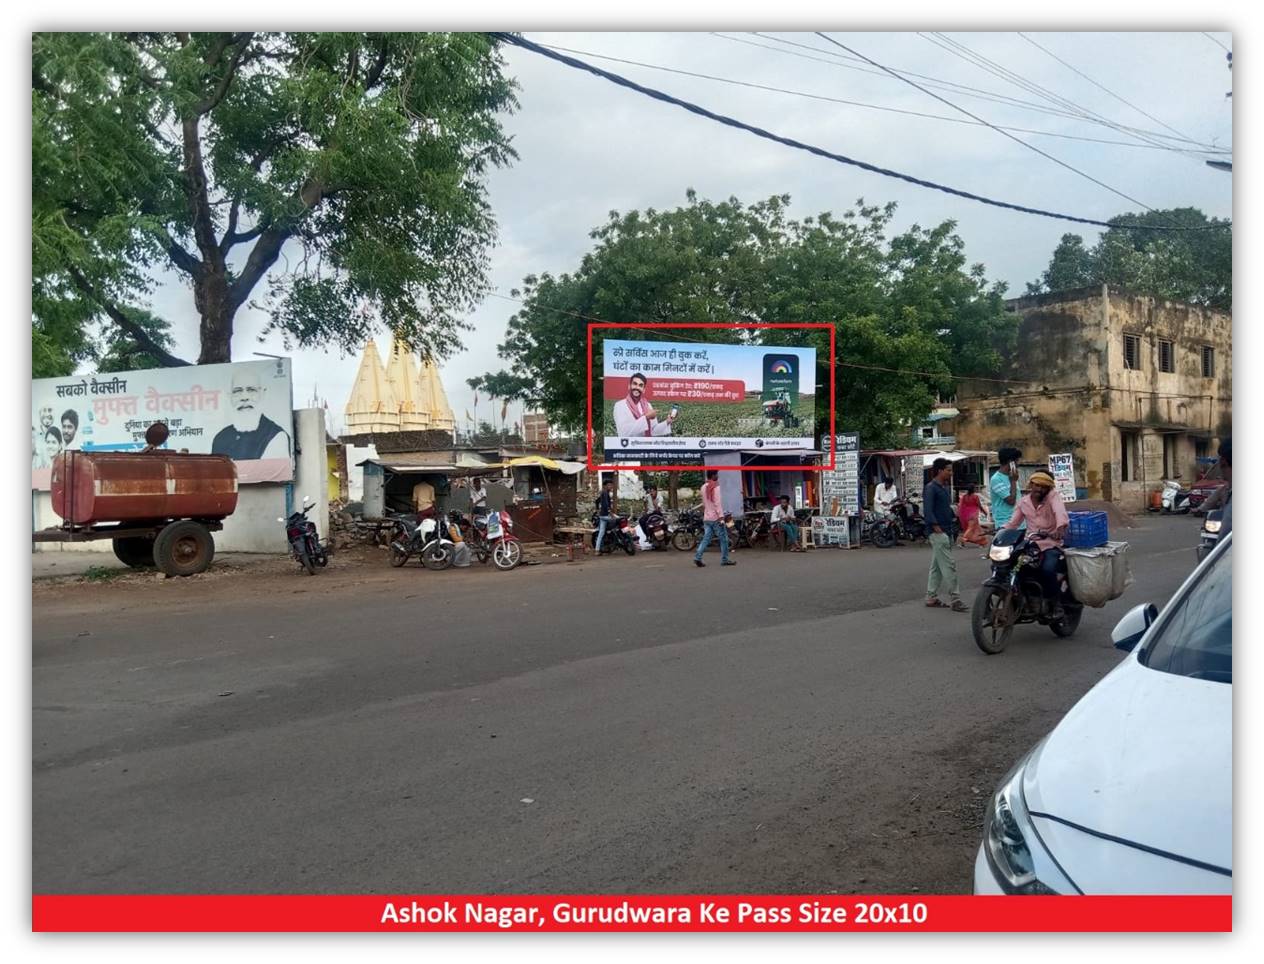 Billboard - Ashok Nagar Gurudwara ke pass, Ashok Nagar, Madhya Pradesh